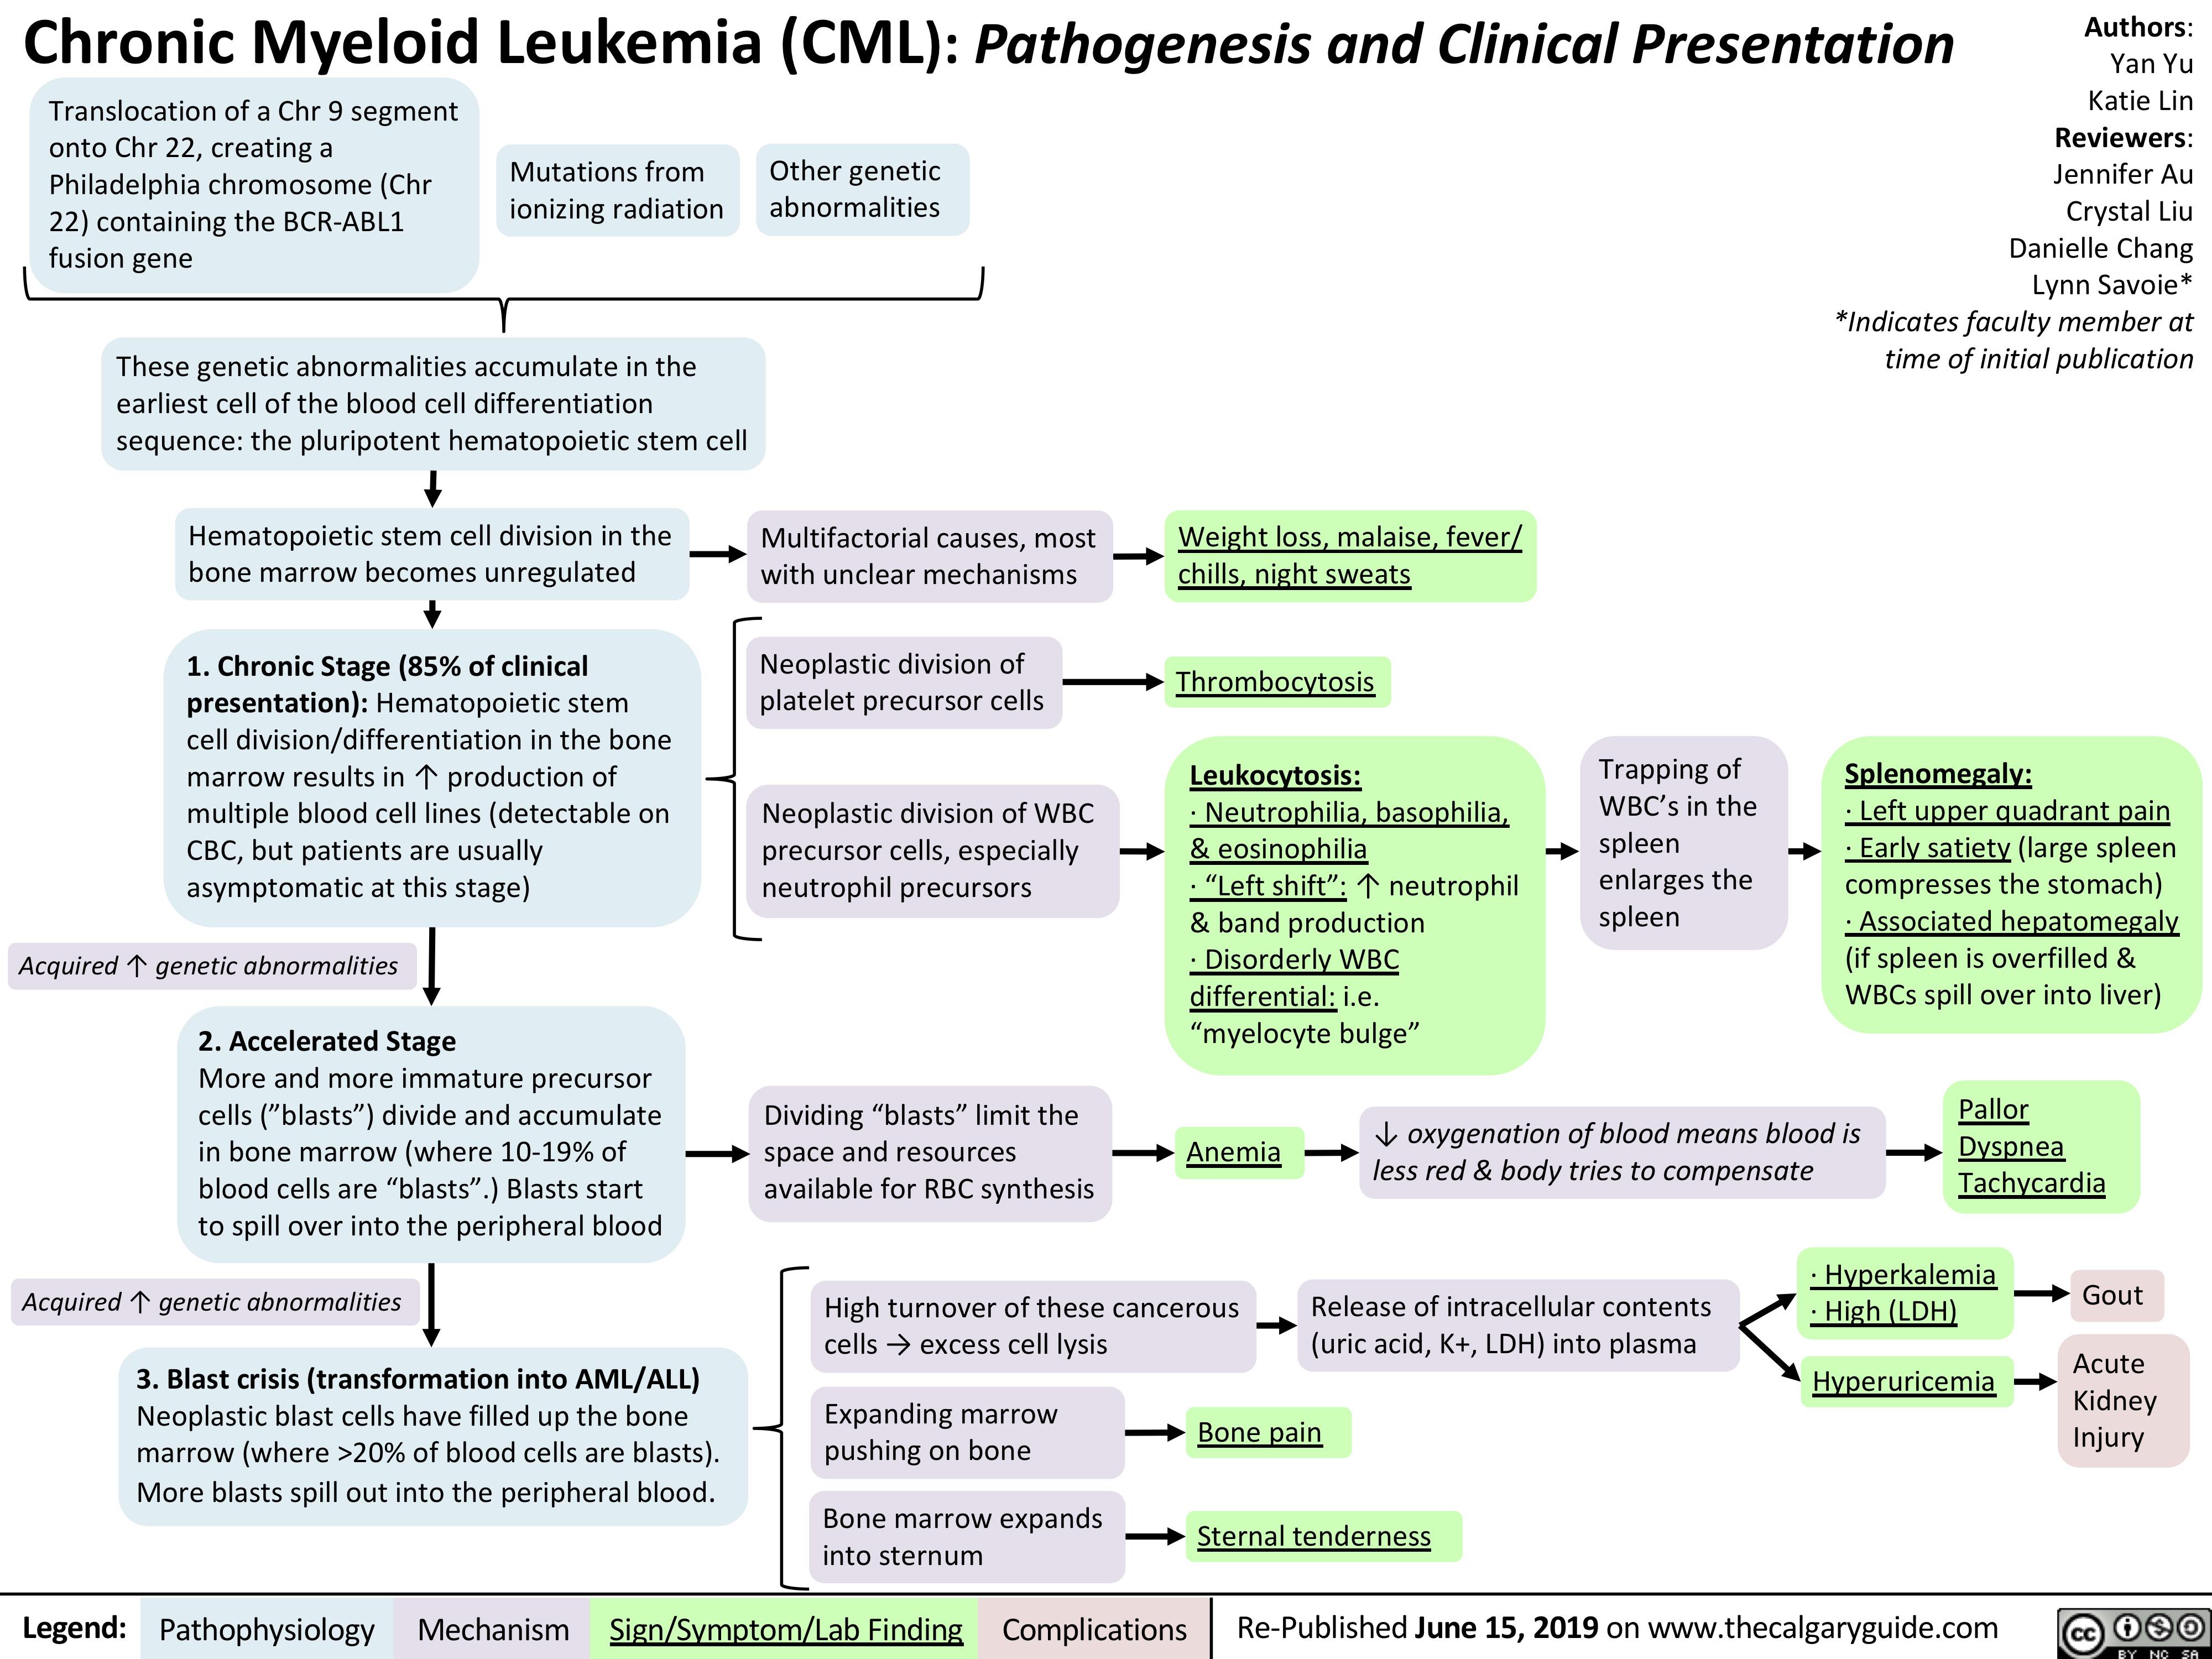 chronic myelogenous leukemia